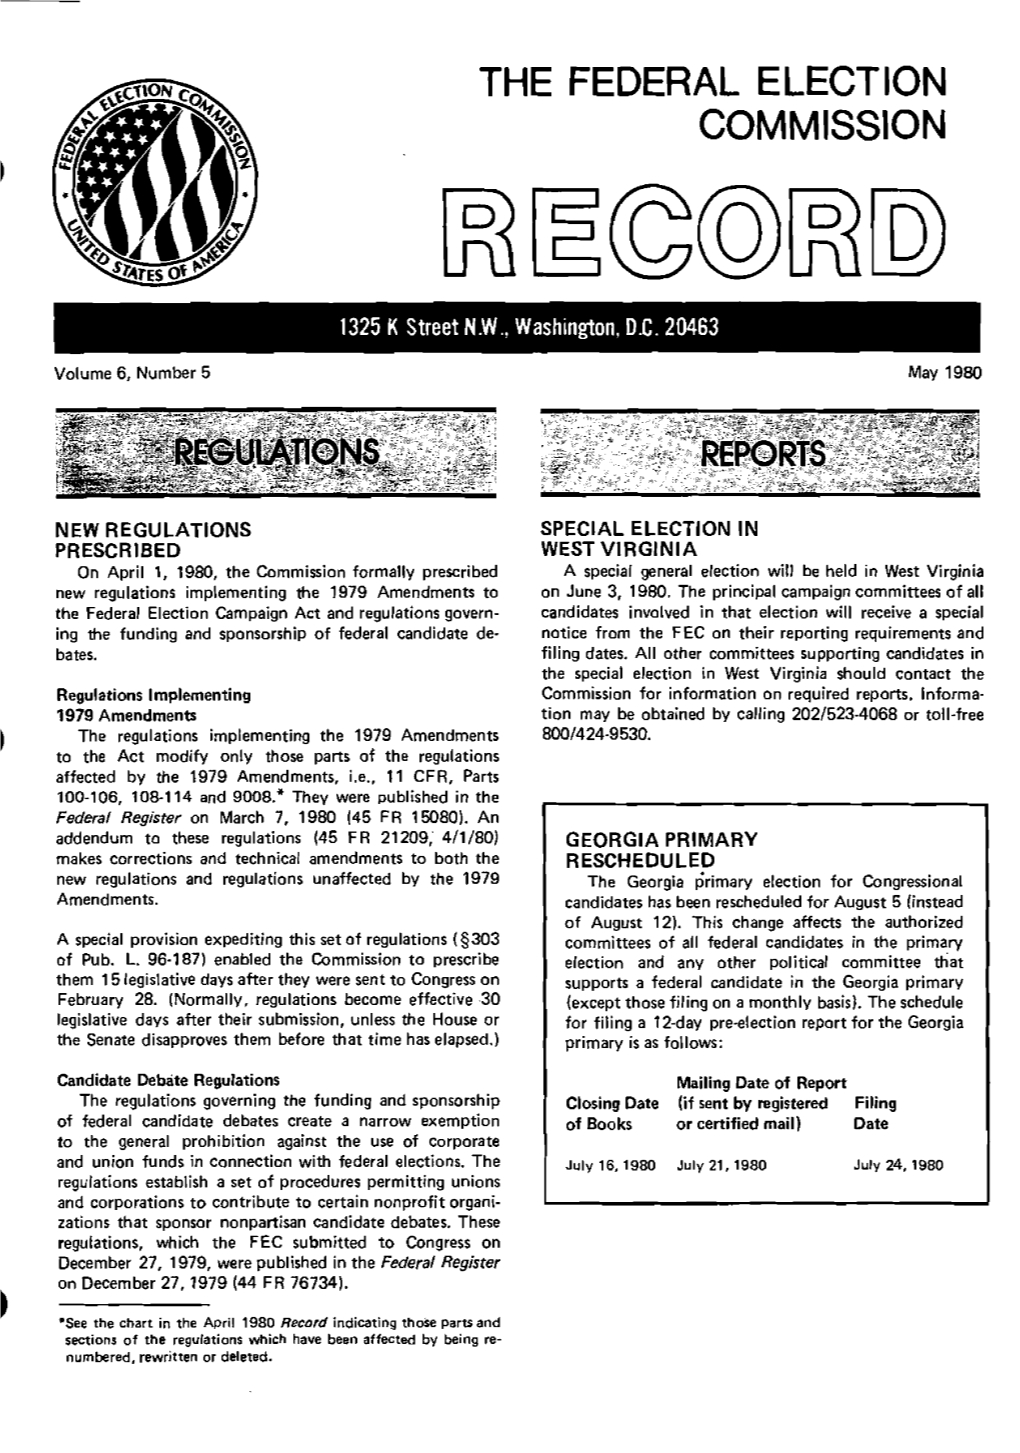 May 1980 Record